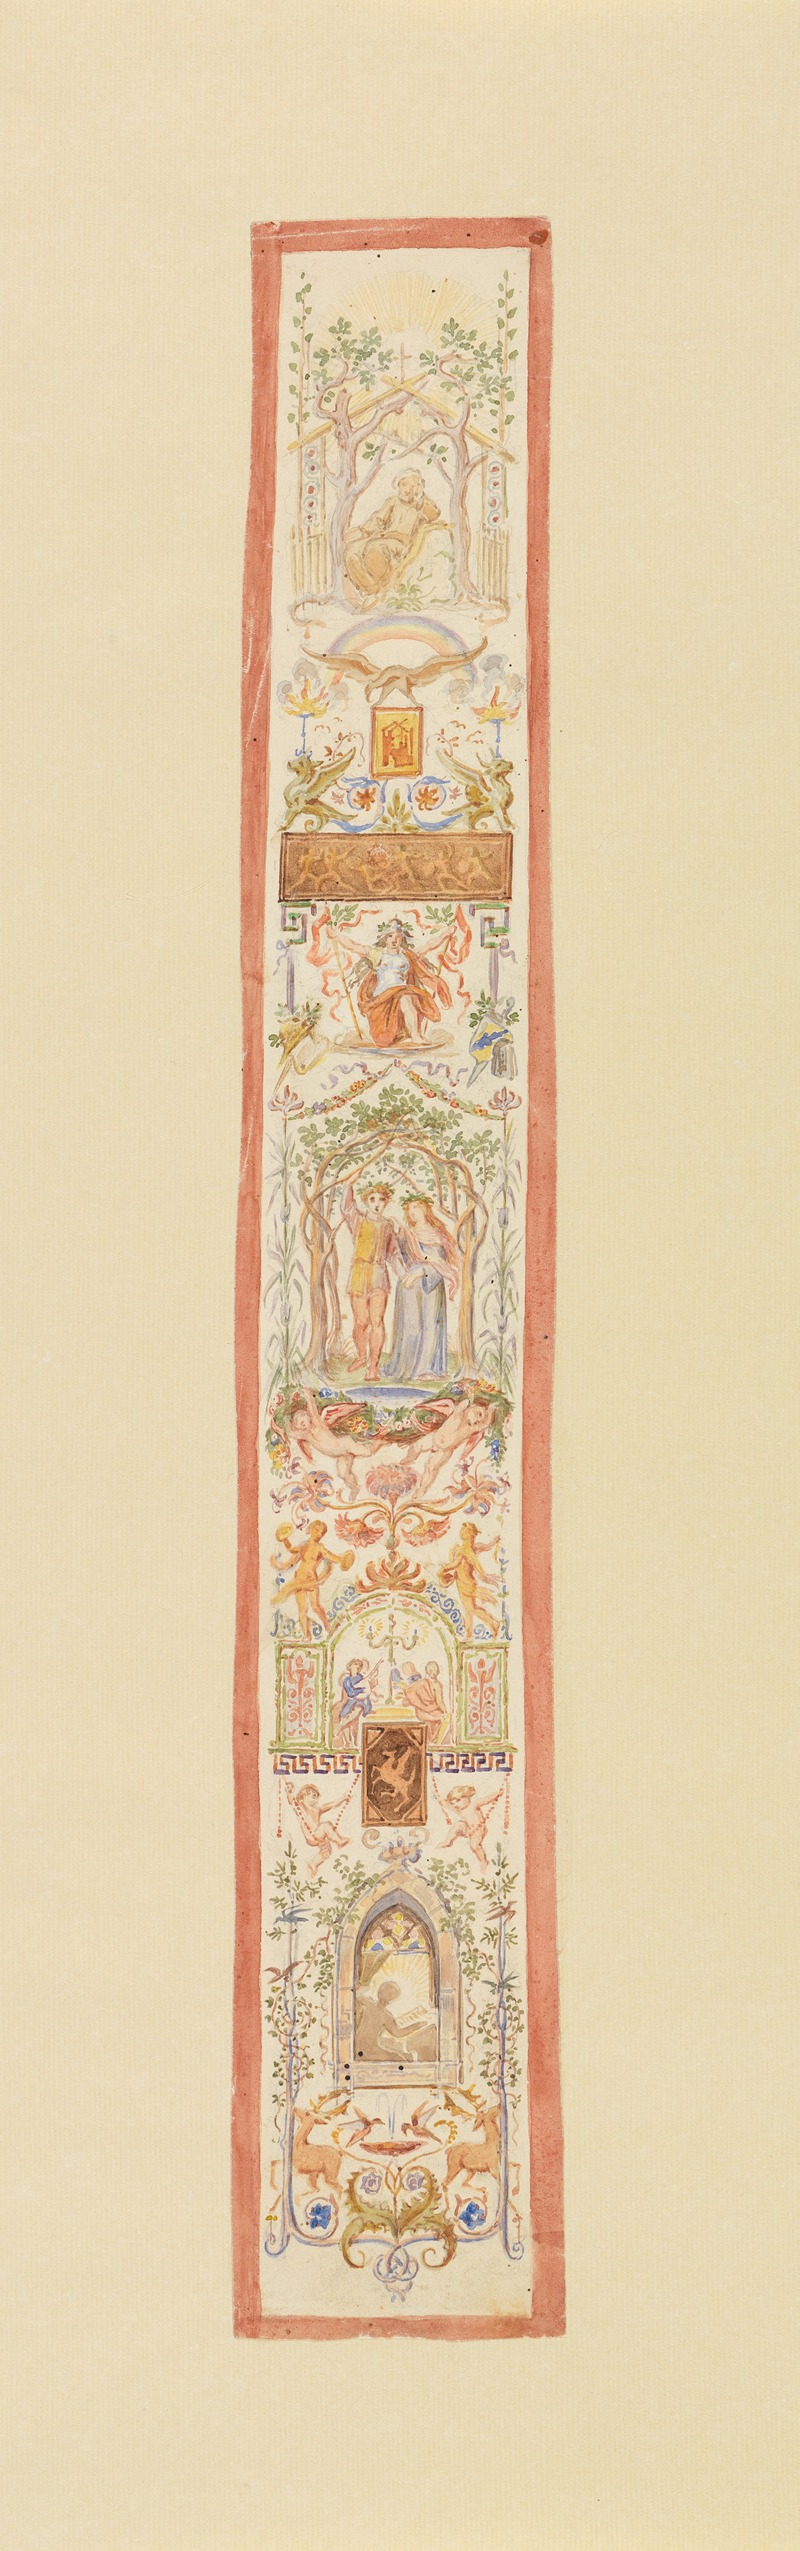 Moritz von Schwind - Entwurf mit vegetabilischen Ornamenten und figürlichen Szenen für eine Wanddekoration